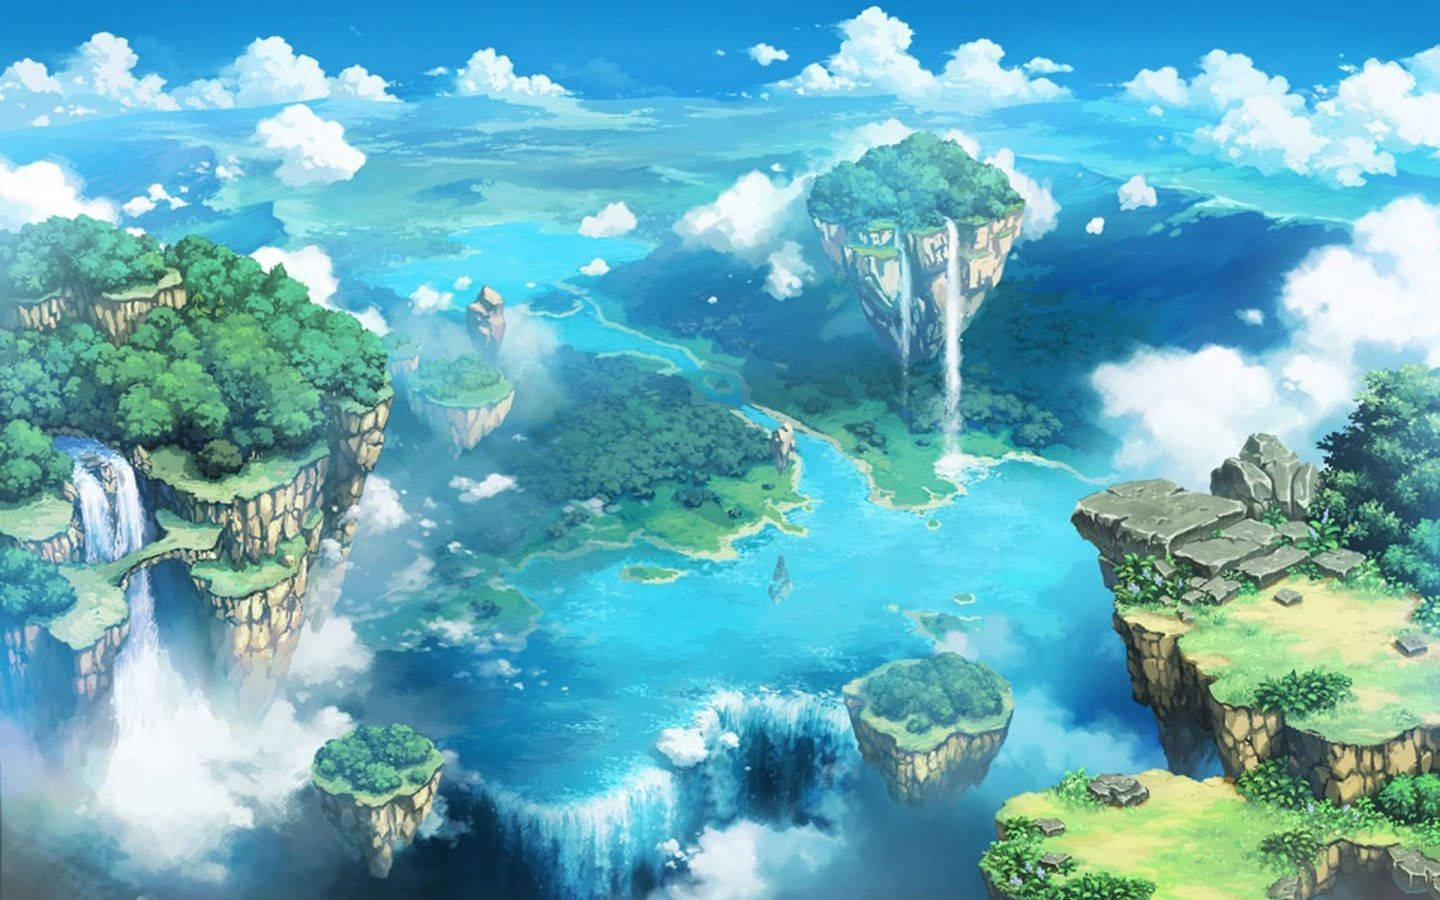 The Abarat Archipelago Aesthetic Anime Scenery Background